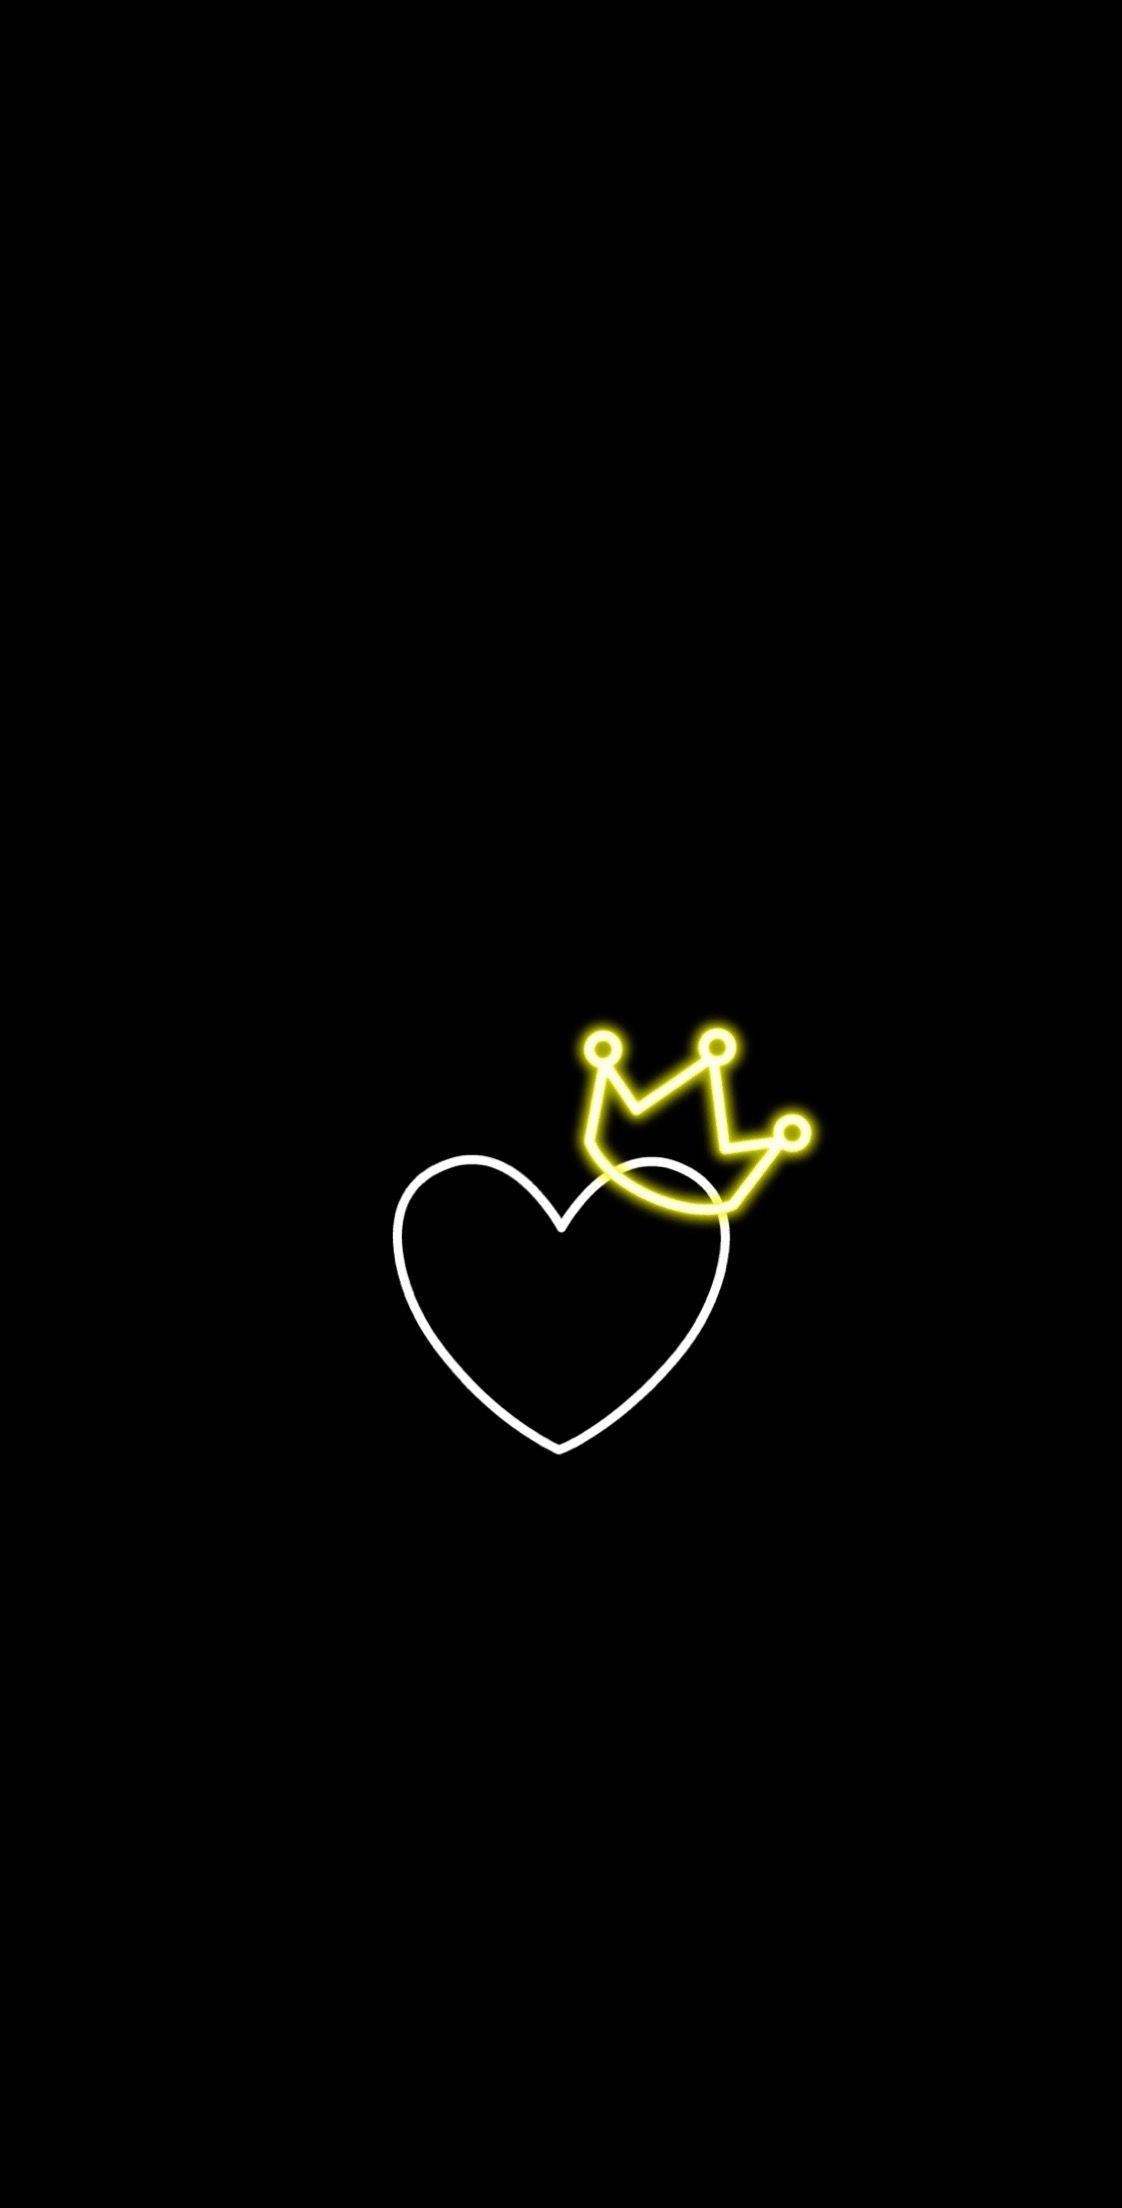 Nếu bạn đang tìm kiếm một bức ảnh đẹp cho chiếc điện thoại iPhone của mình, hãy cùng xem bộ sưu tập hình nền Dark Heart emoji đen này. Với thiết kế tinh tế và lãng mạn, bộ sưu tập này chắc chắn sẽ làm bạn cảm thấy hài lòng và vô cùng hứng thú.